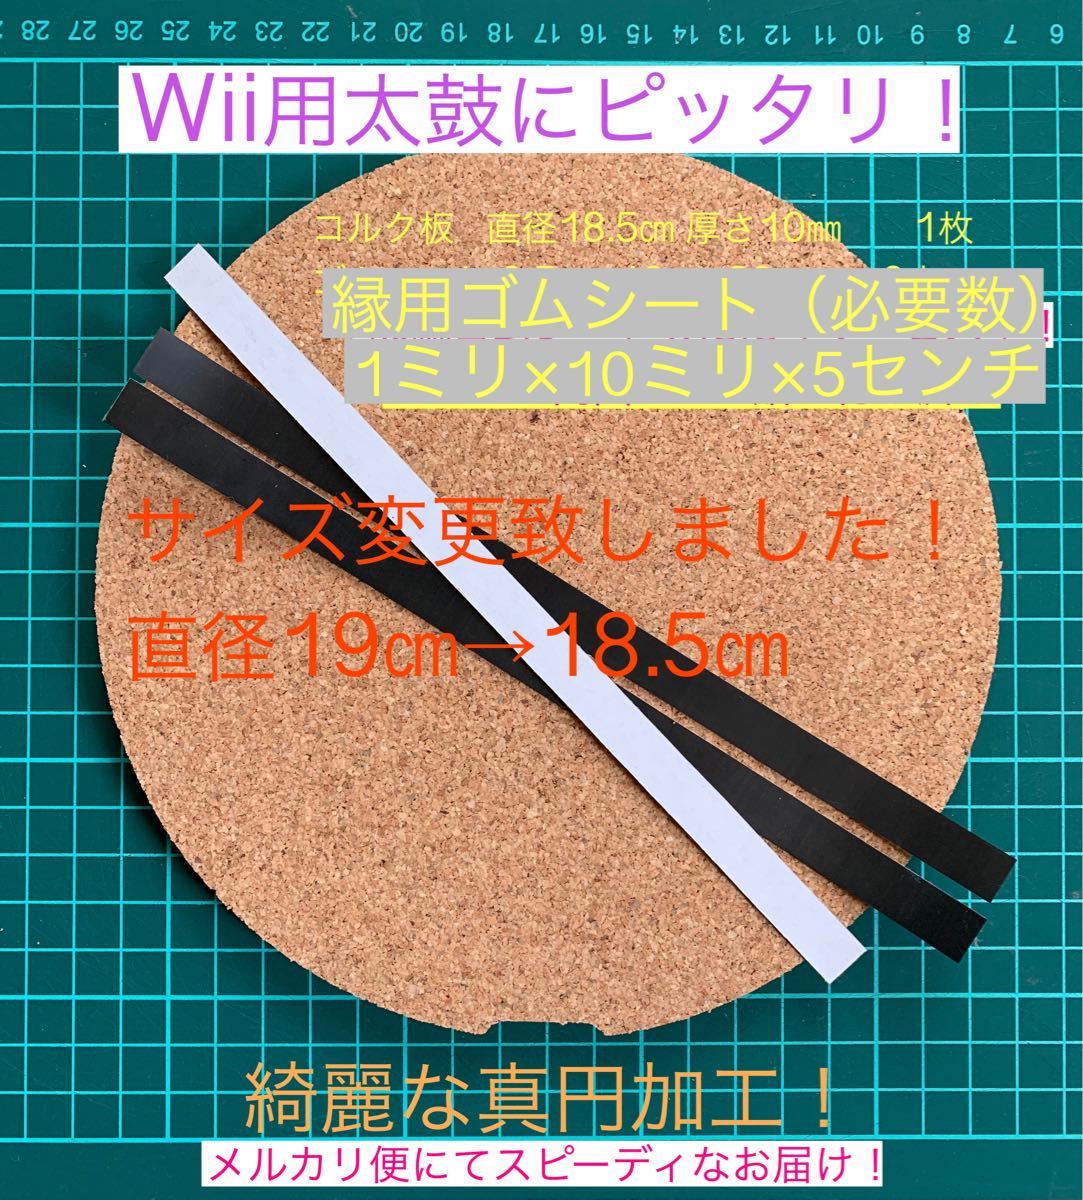 Wii・WiiU専用太鼓にピッタリタタコン改造用コルク・縁ゴムセット 